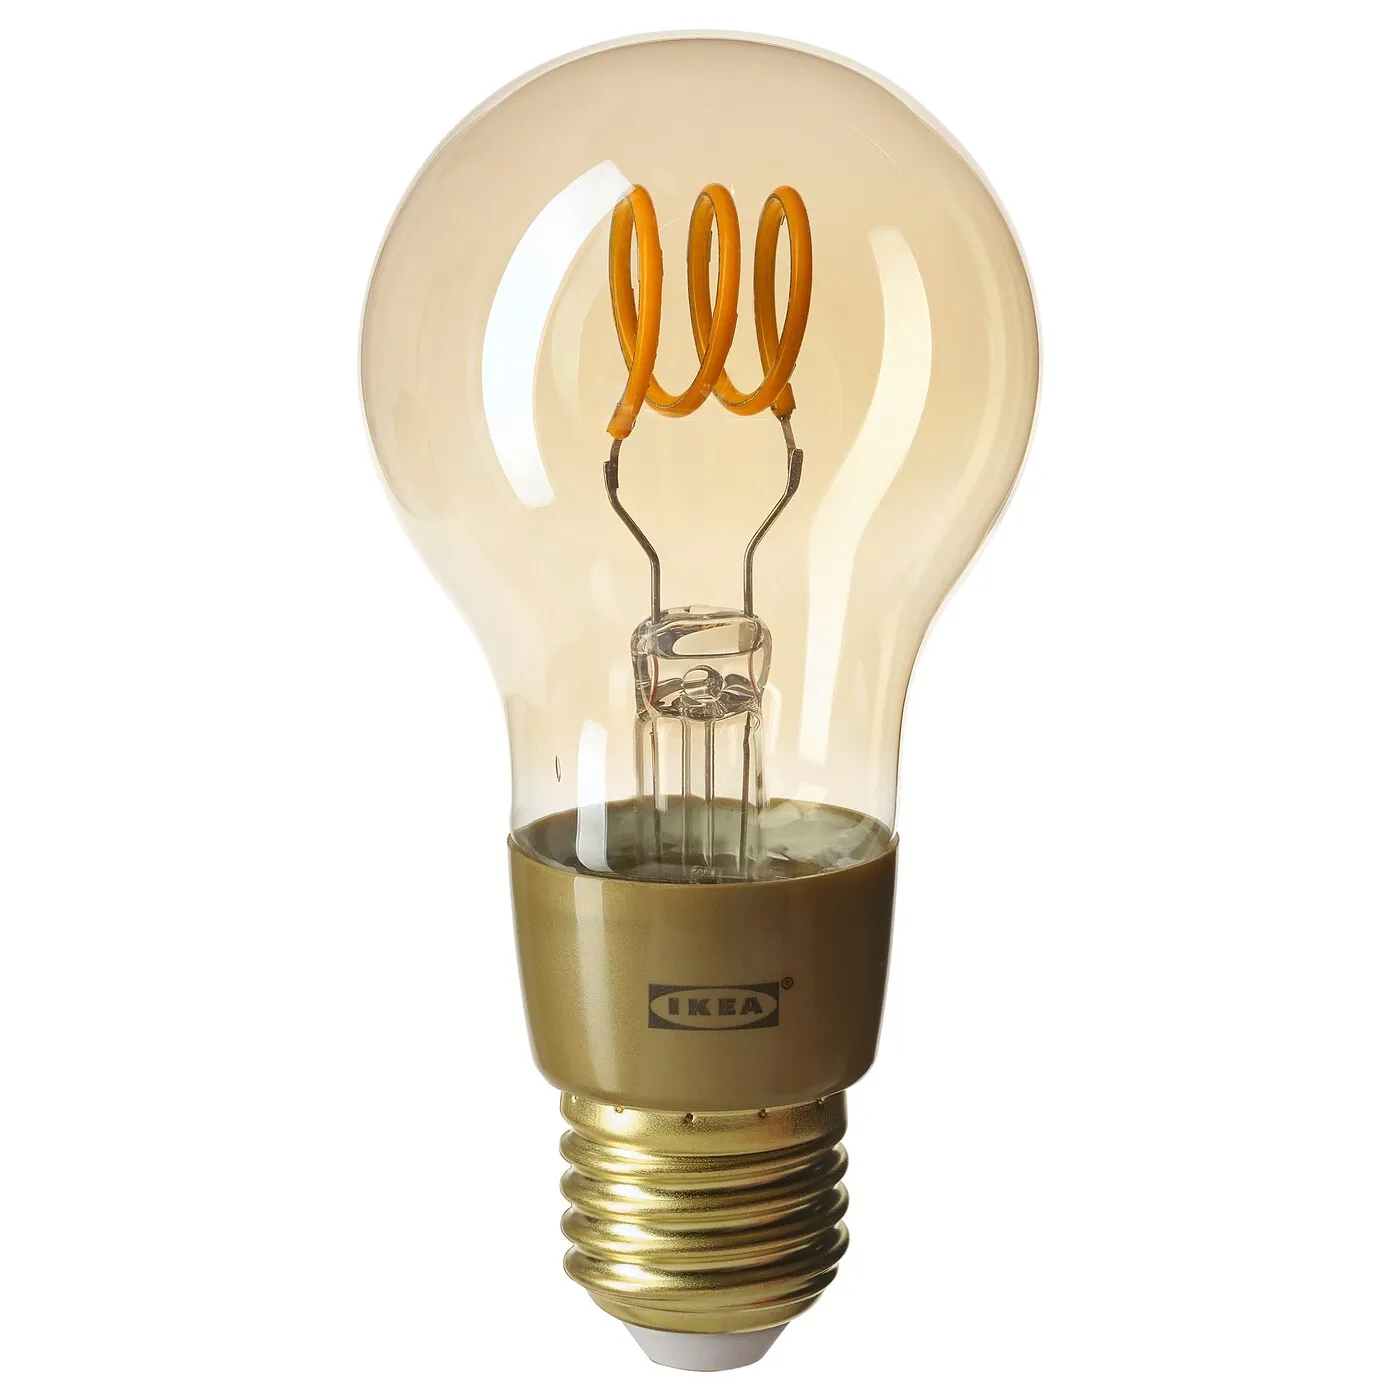 behandeling koper eetbaar IKEA Tradfri LED bulb E27 250 lumen, wireless dimmable warm glow, globe  brown clear glass LED1842G3 Zigbee compatibility